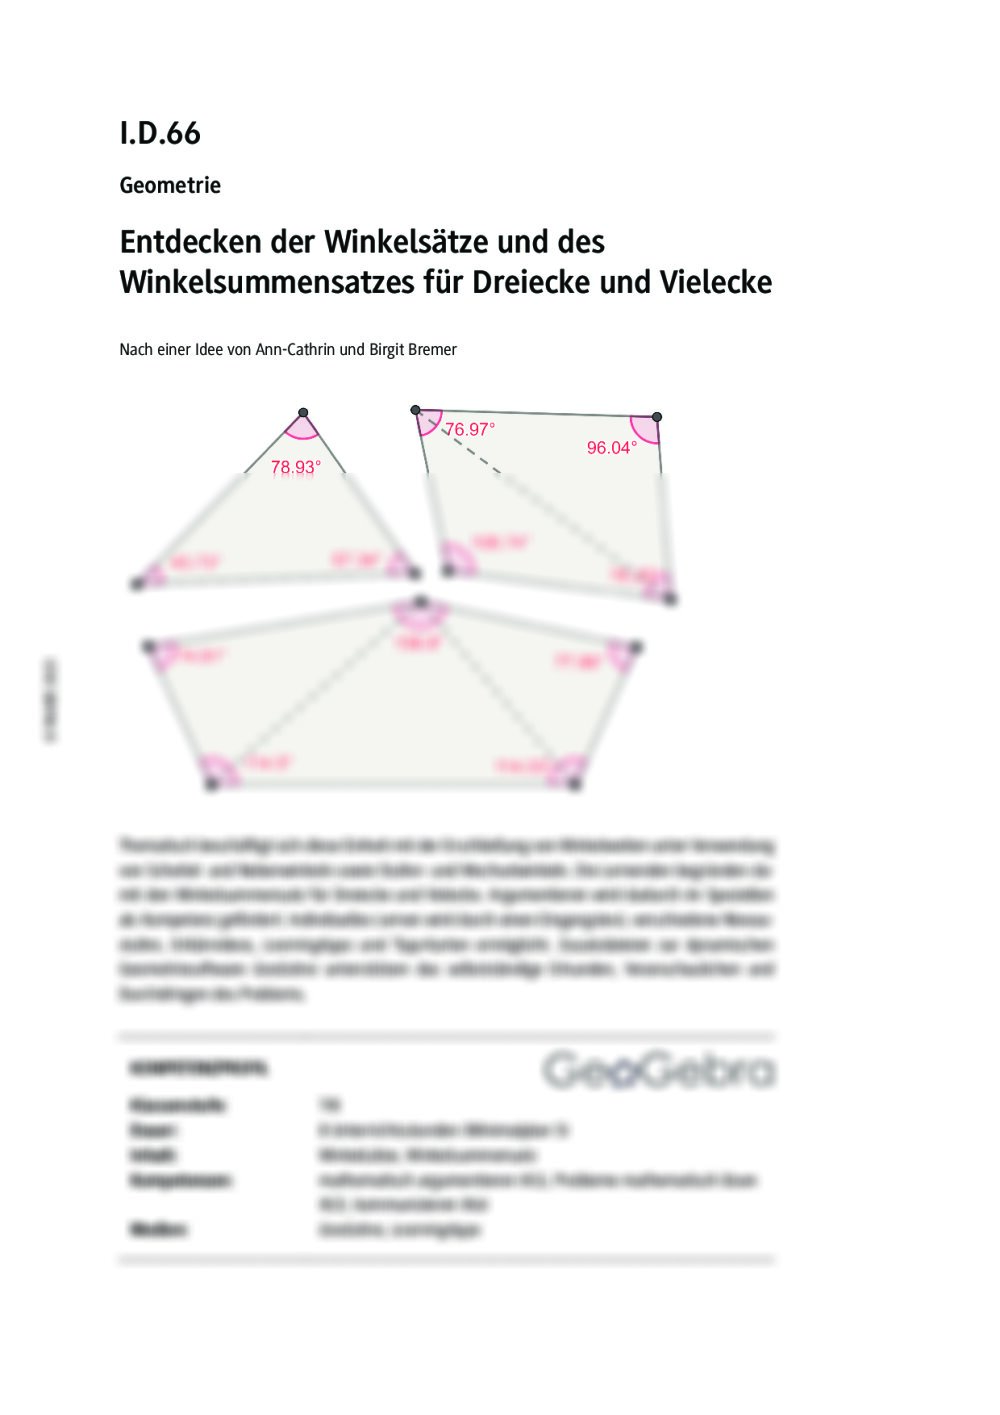 Entdecken der Winkelsätze und des Winkelsummensatz für Dreiecke und Vielecke - Seite 1